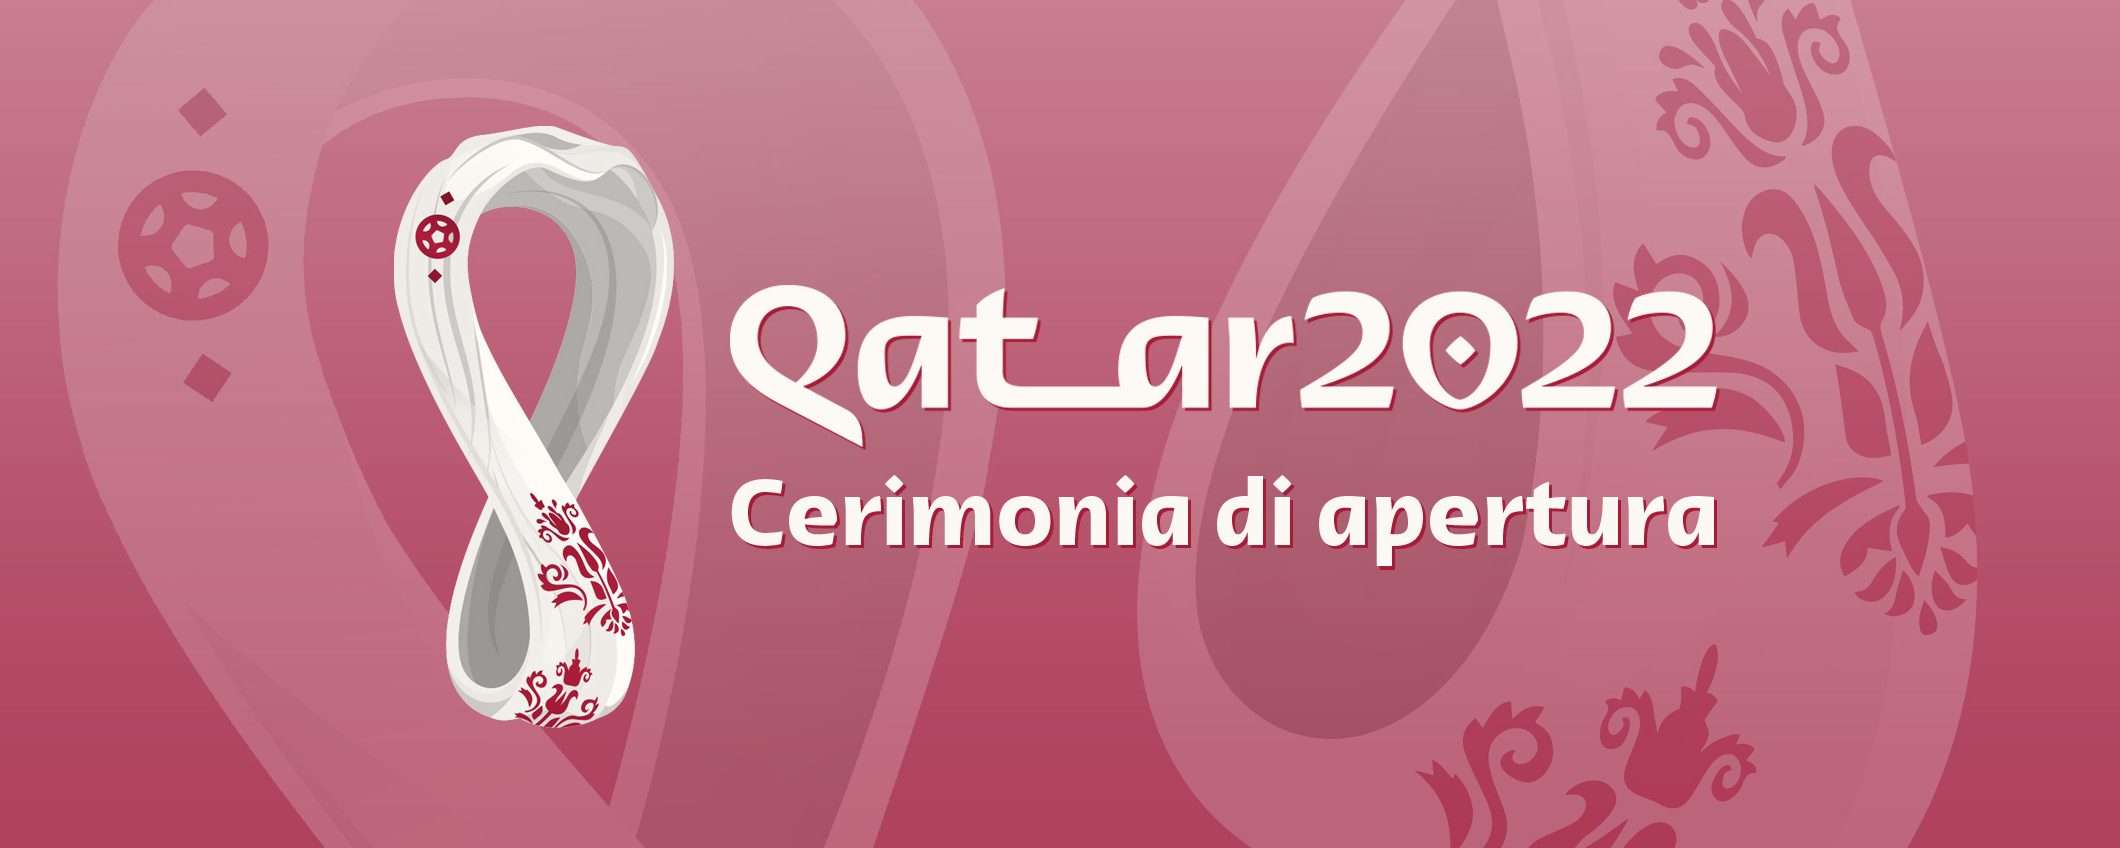 Qatar 2022: la cerimonia di apertura in streaming